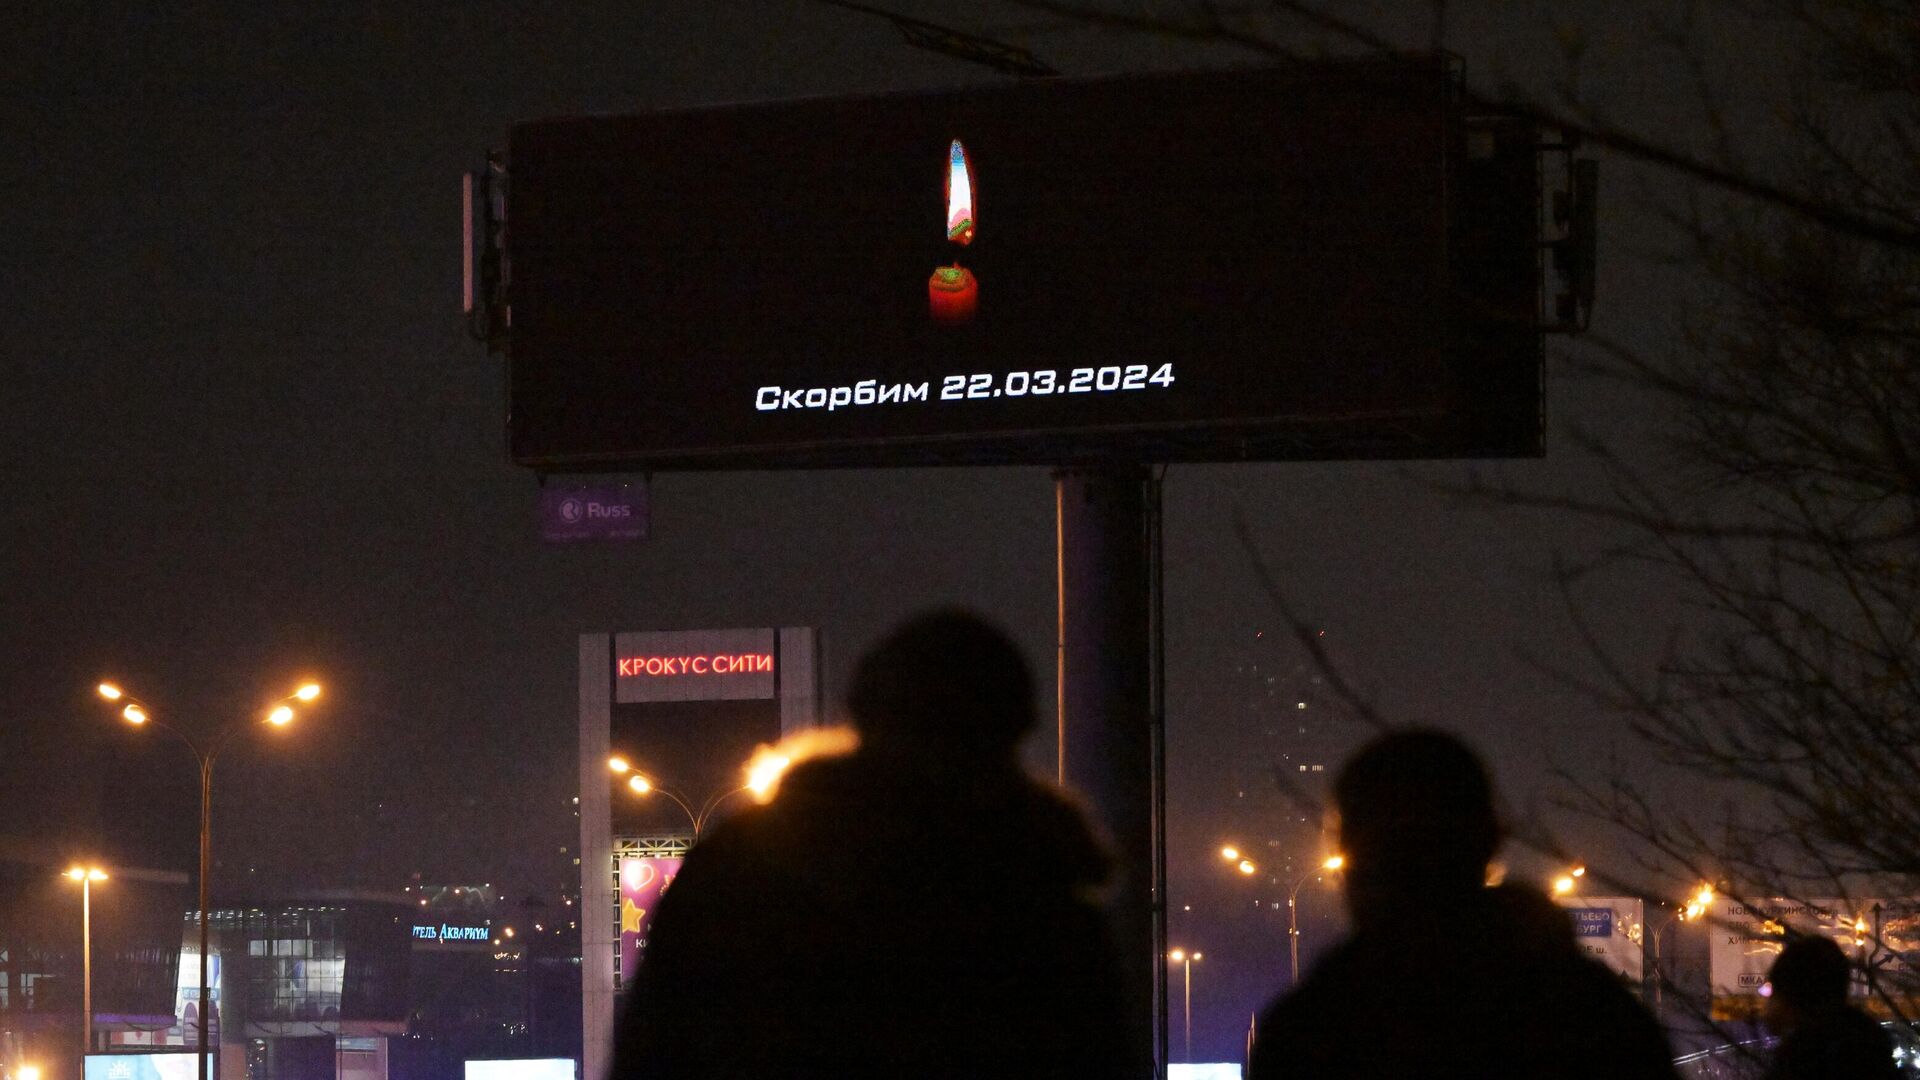 Сообщение Скорбим на рекламном экране, расположенном недалеко от концертного зала Крокус Сити Холл - РИА Новости, 1920, 24.03.2024